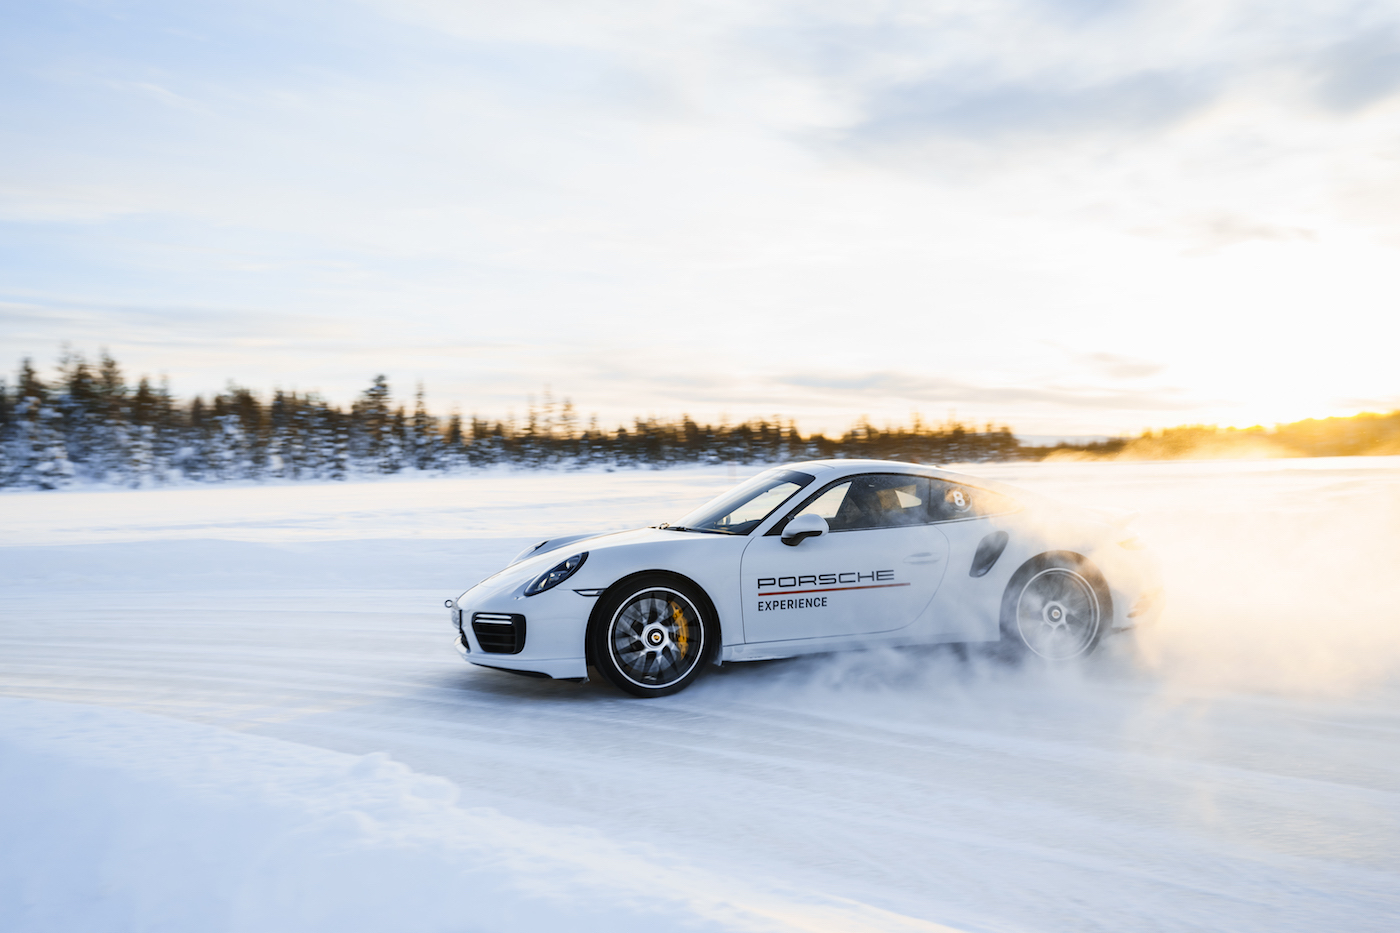 30 Jahre Allrad: Die Porsche Ice Experience 2018 4